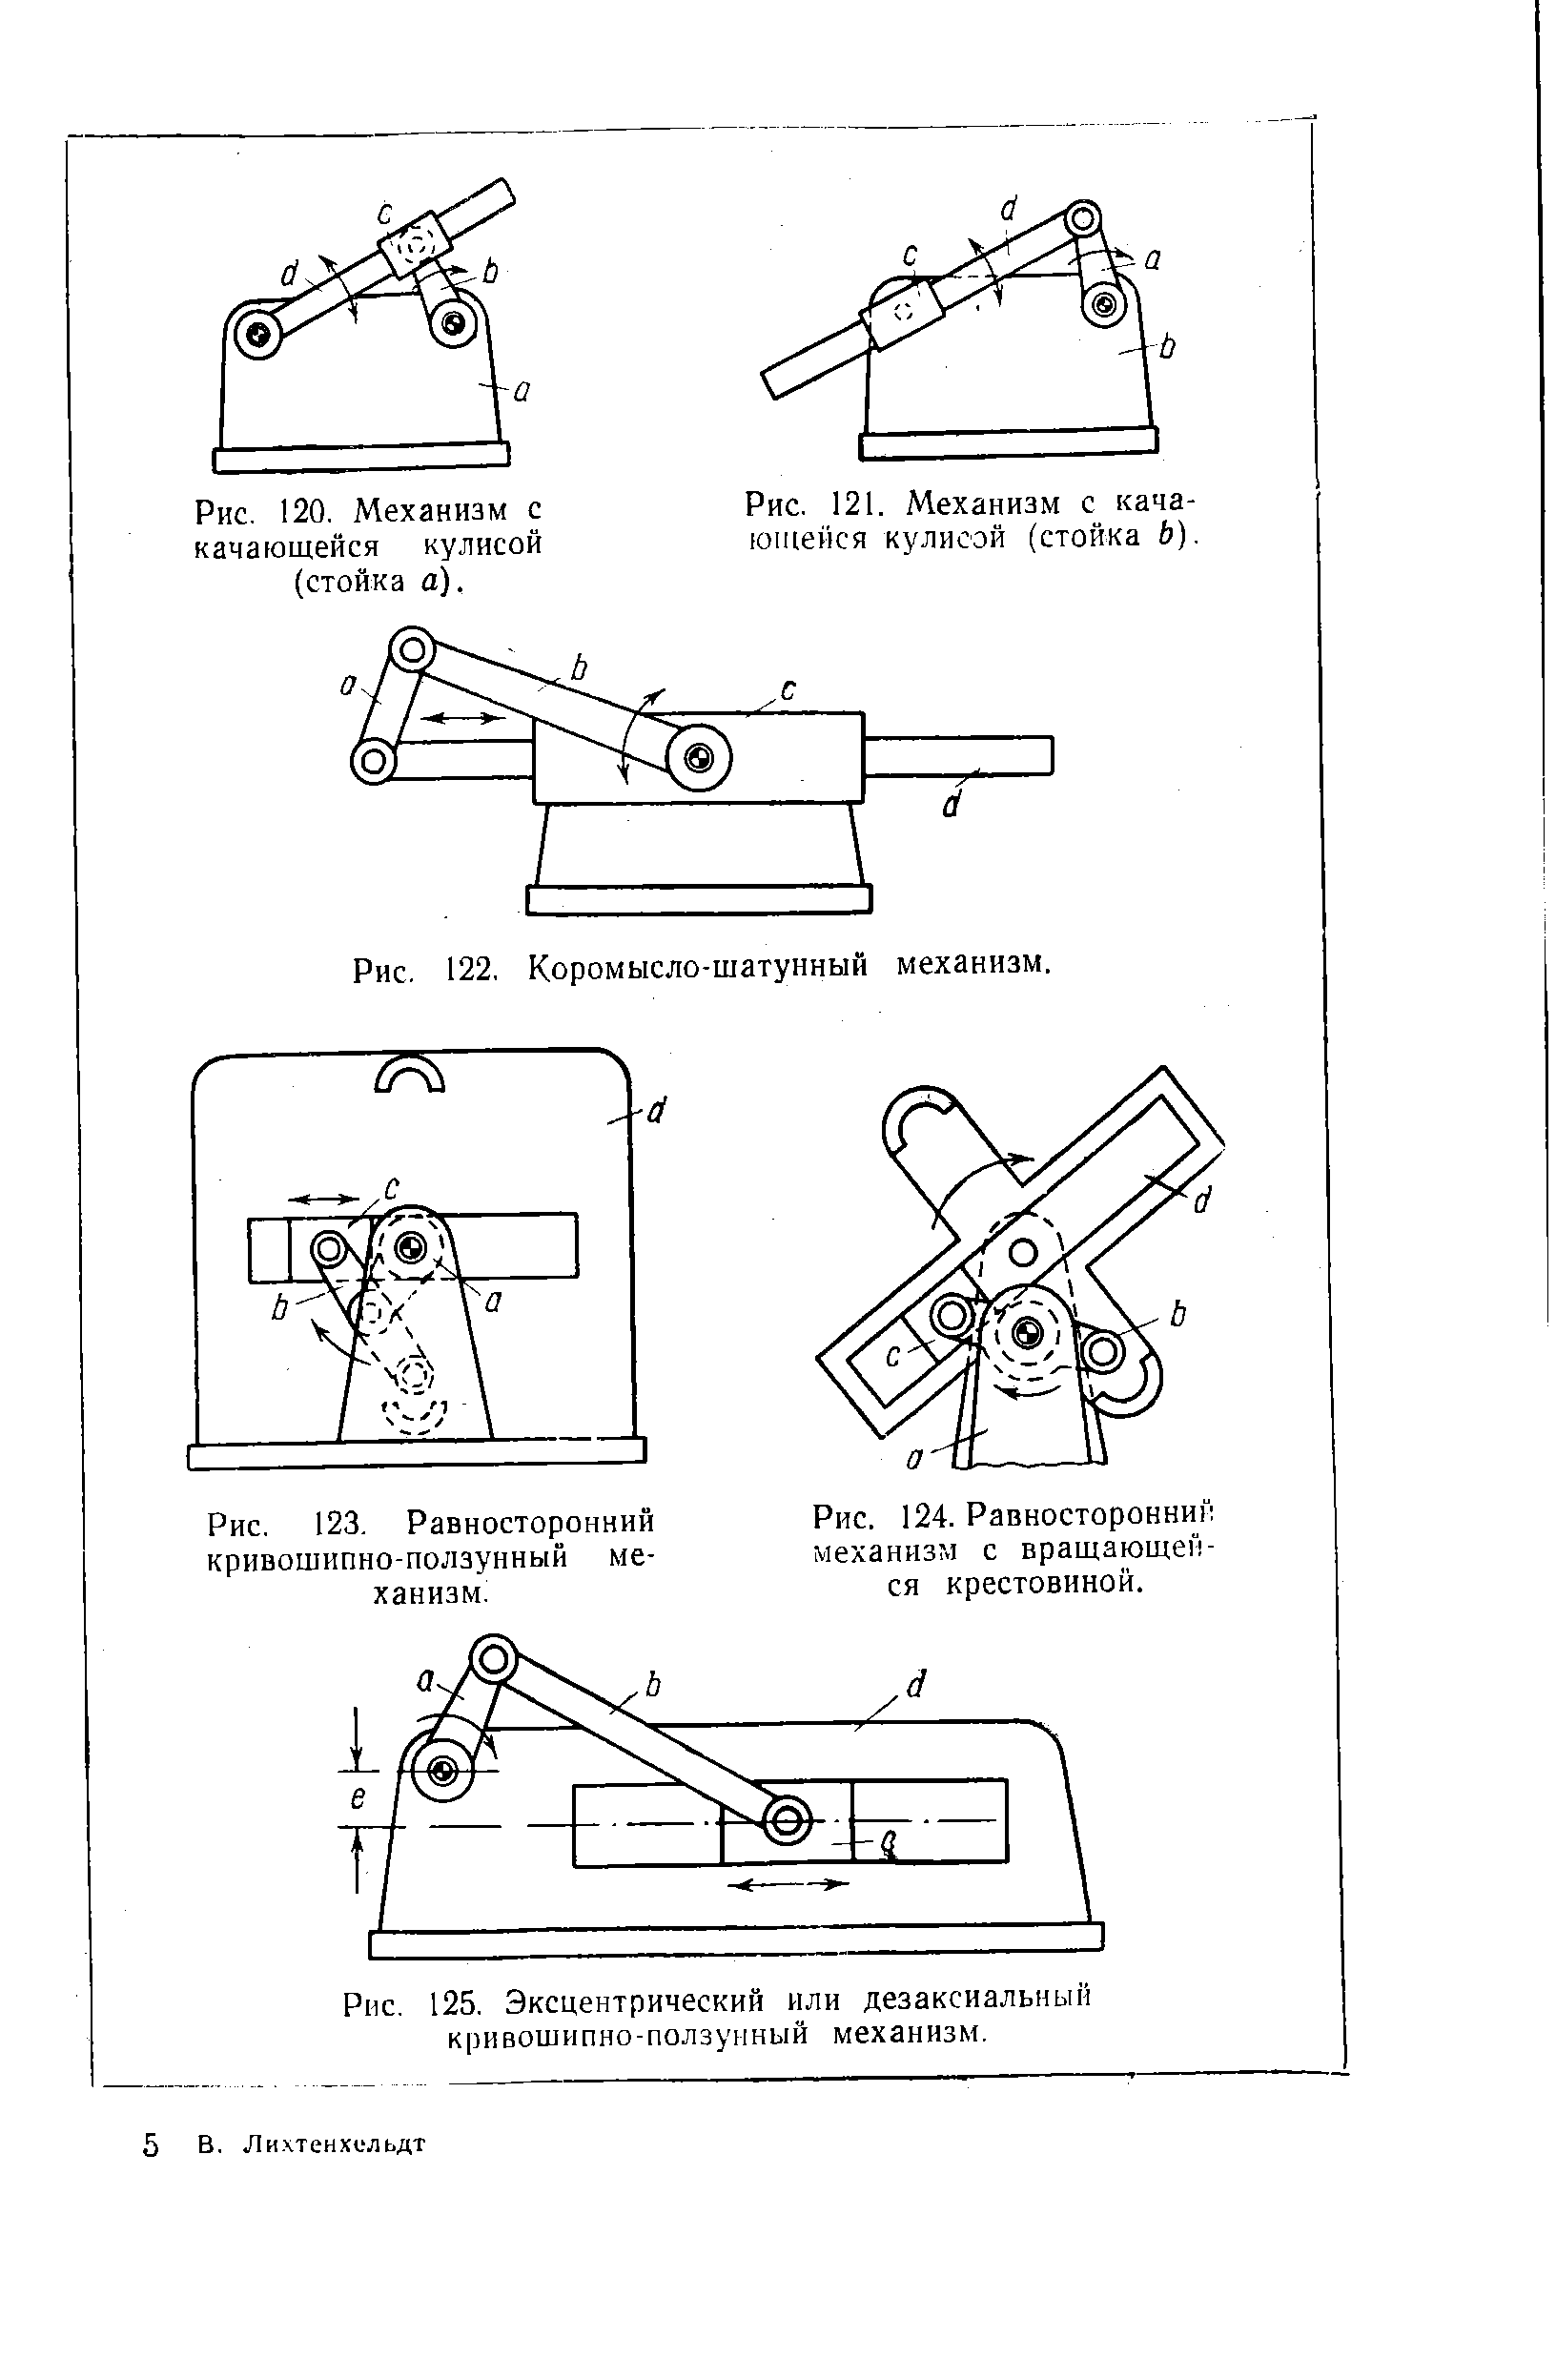 Рис. 121. Механизм с качающейся кулисой (стойка 6).
